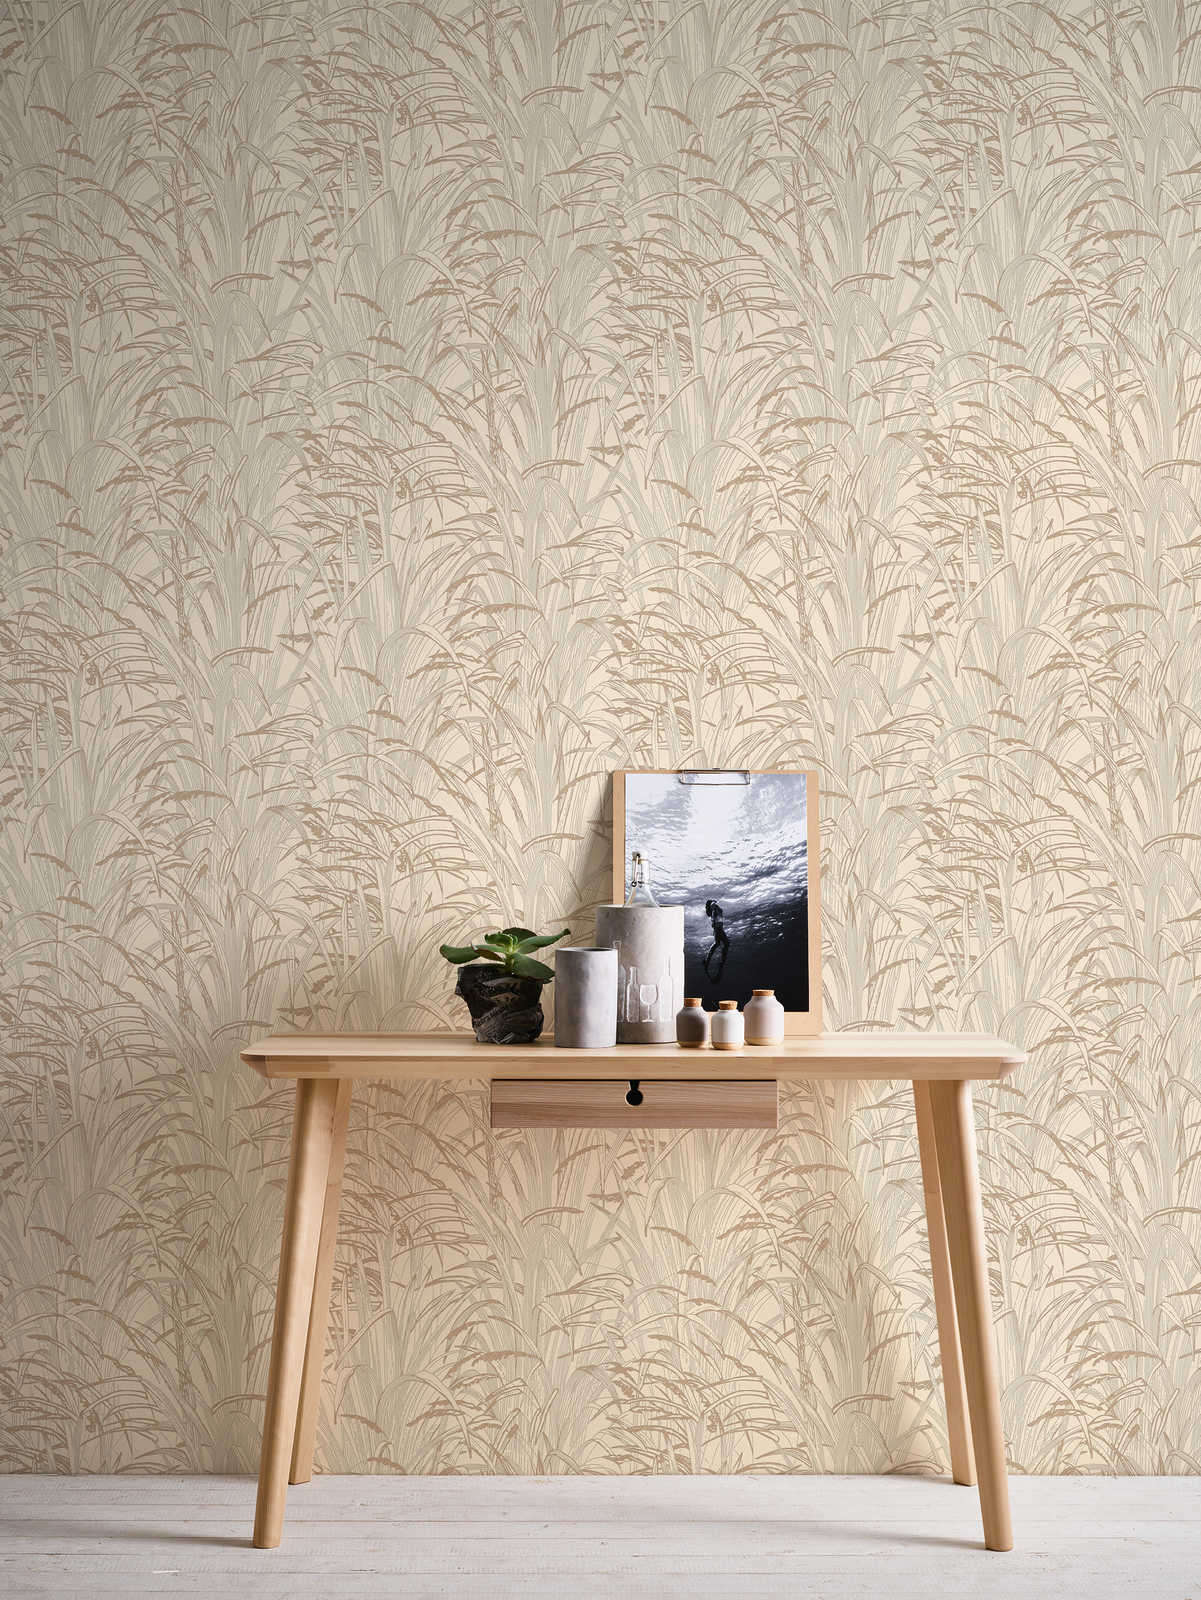             Leaves wallpaper metallic design - beige, metallic
        